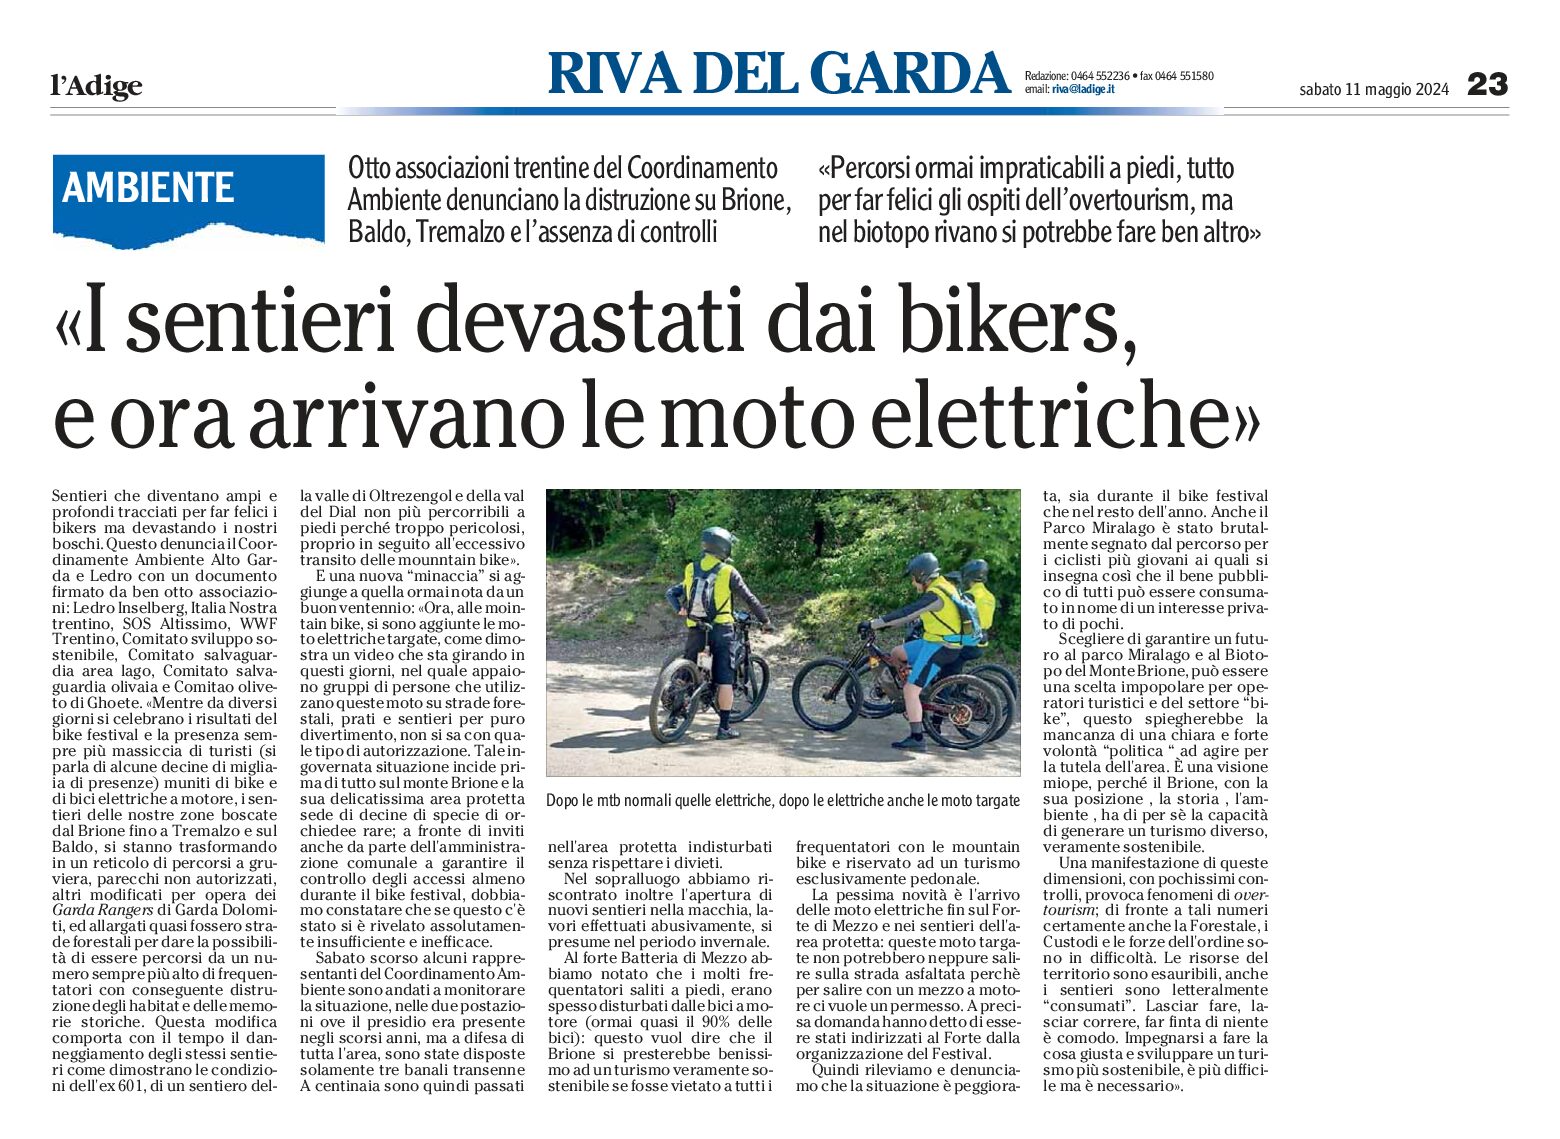 Alto Garda: sentieri devastati dai bikers, ora arrivano le moto elettriche